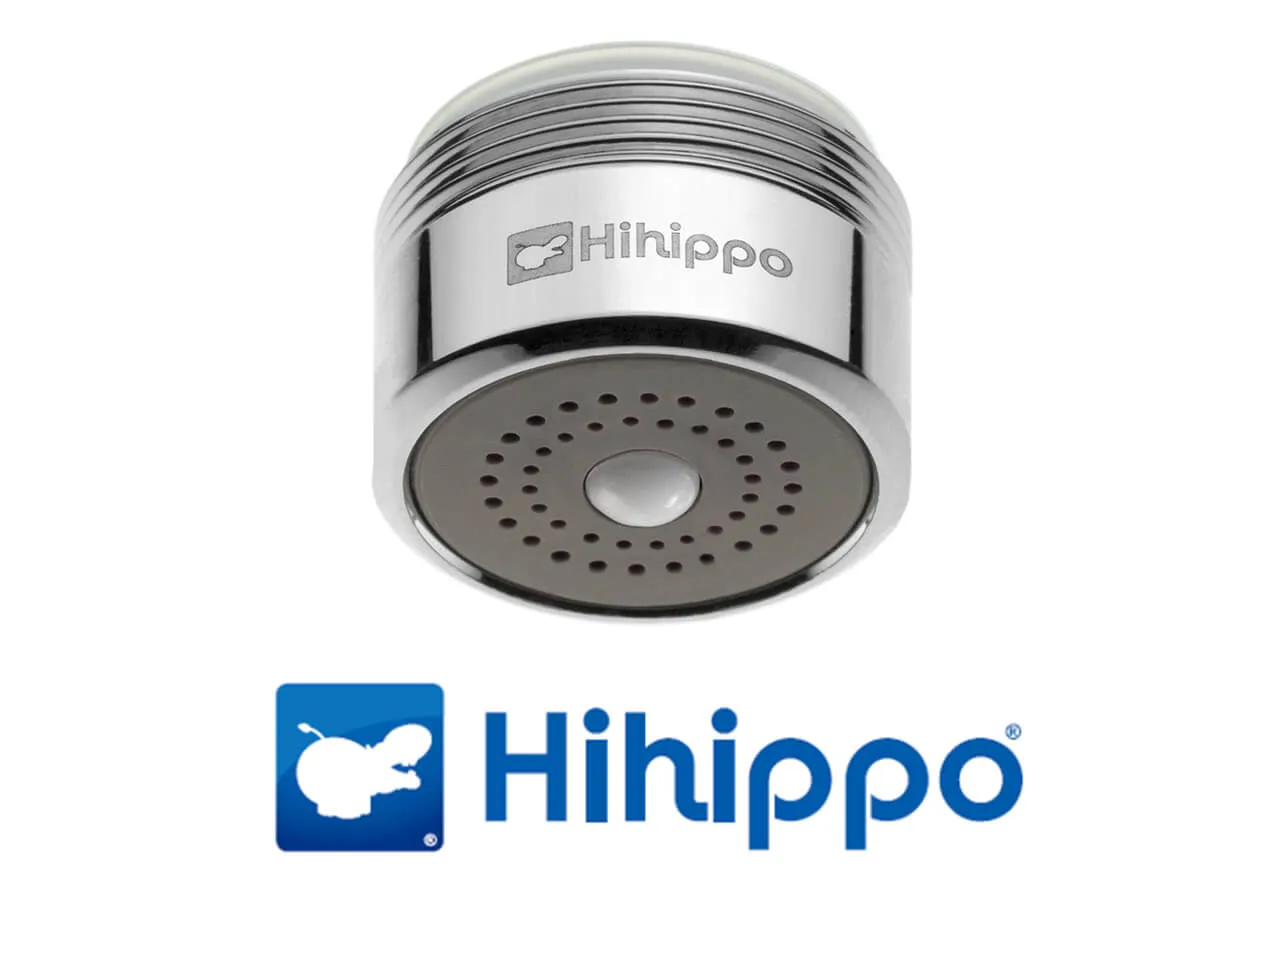 Aireador de ahorro de agua Hihippo T 3.8 - 8.0 l/min